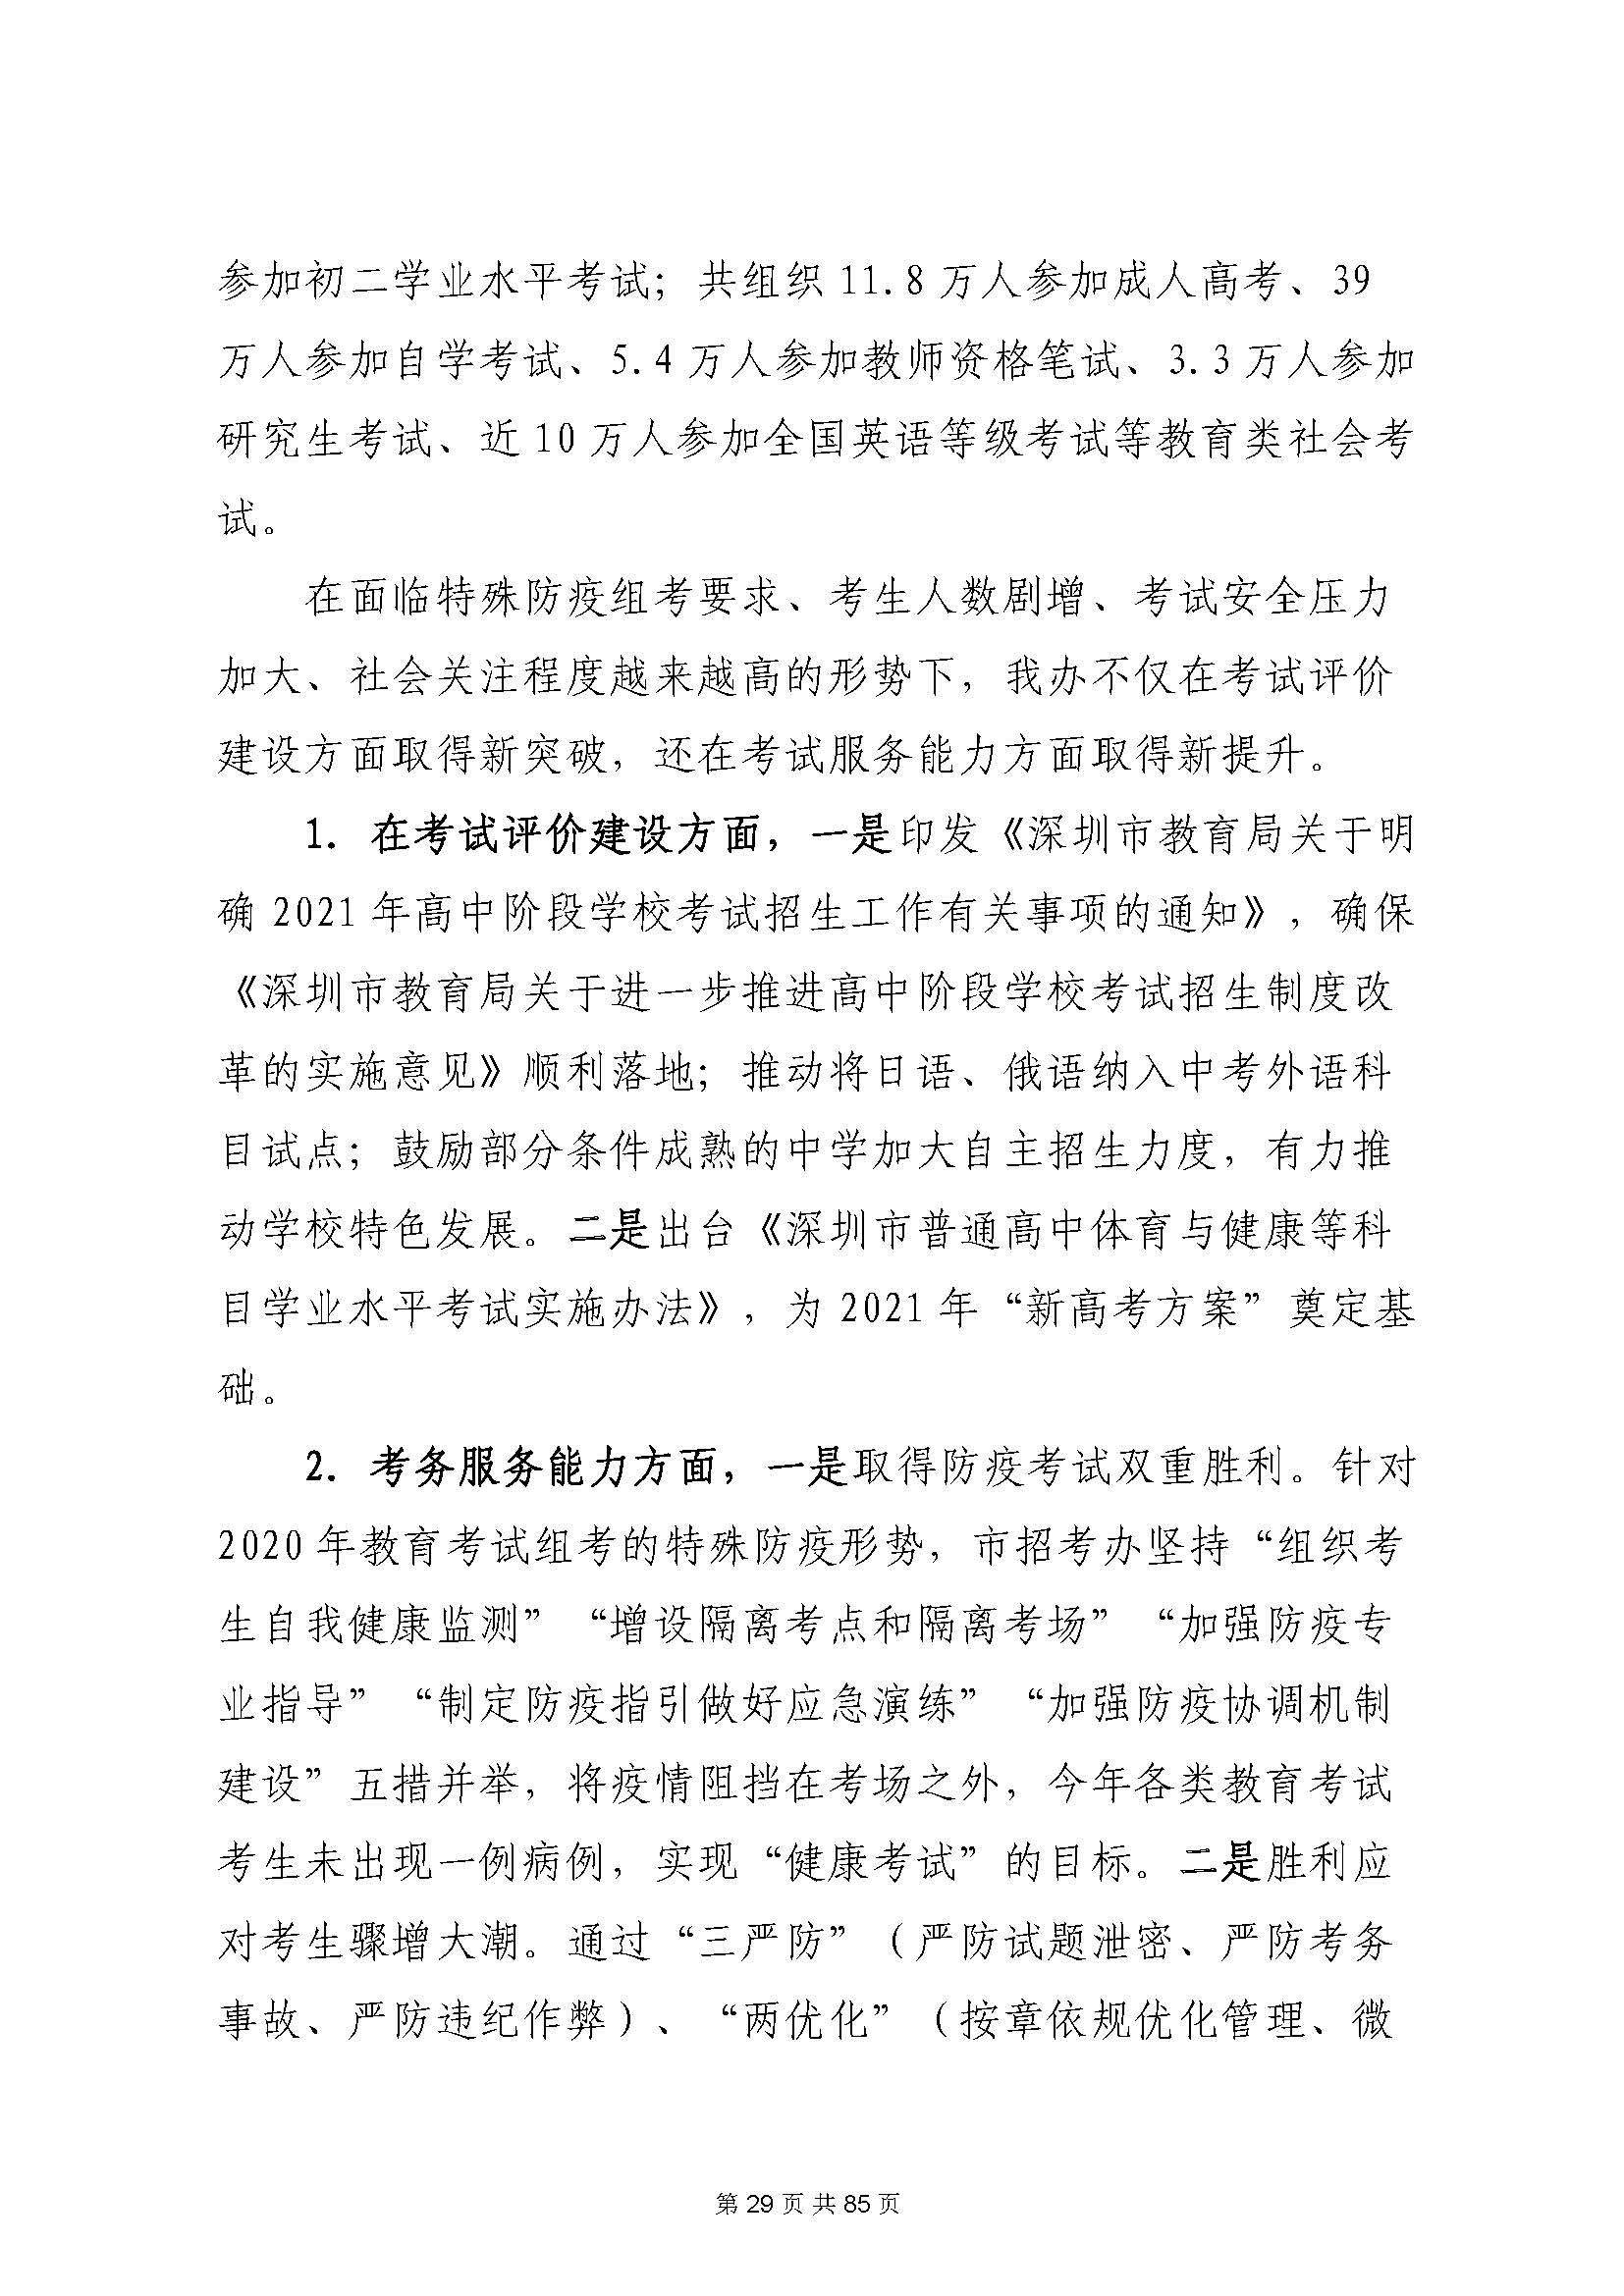 深圳市招生考试办公室2020年度部门决算_页面_30.jpg